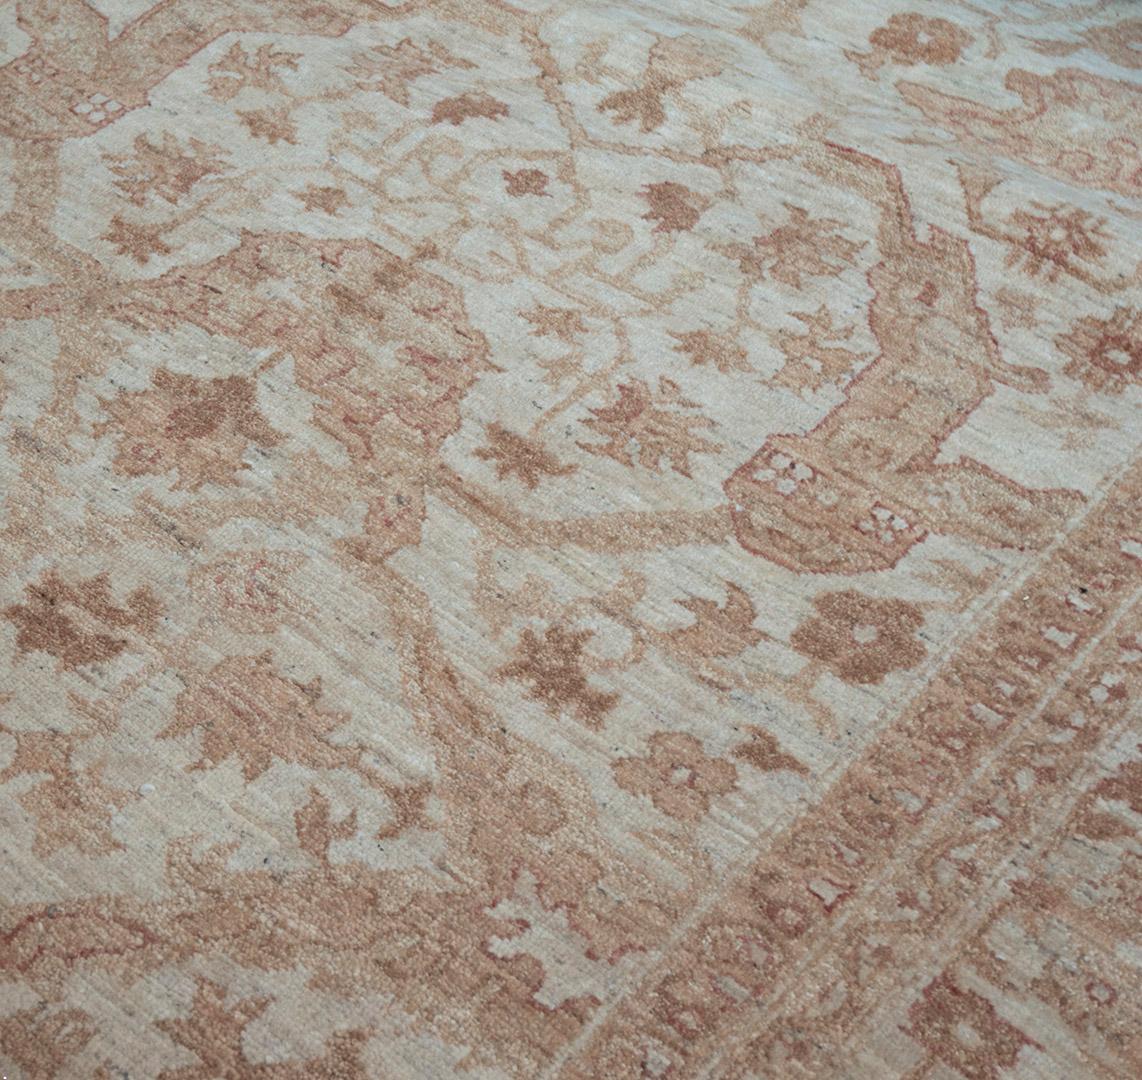 Tissé à la main avec beaucoup d'habileté au Pakistan, ce magnifique tapis d'inspiration Agra présente une coloration brillante et subtile ainsi qu'une texture étonnante. Poil 100 % laine naturelle.